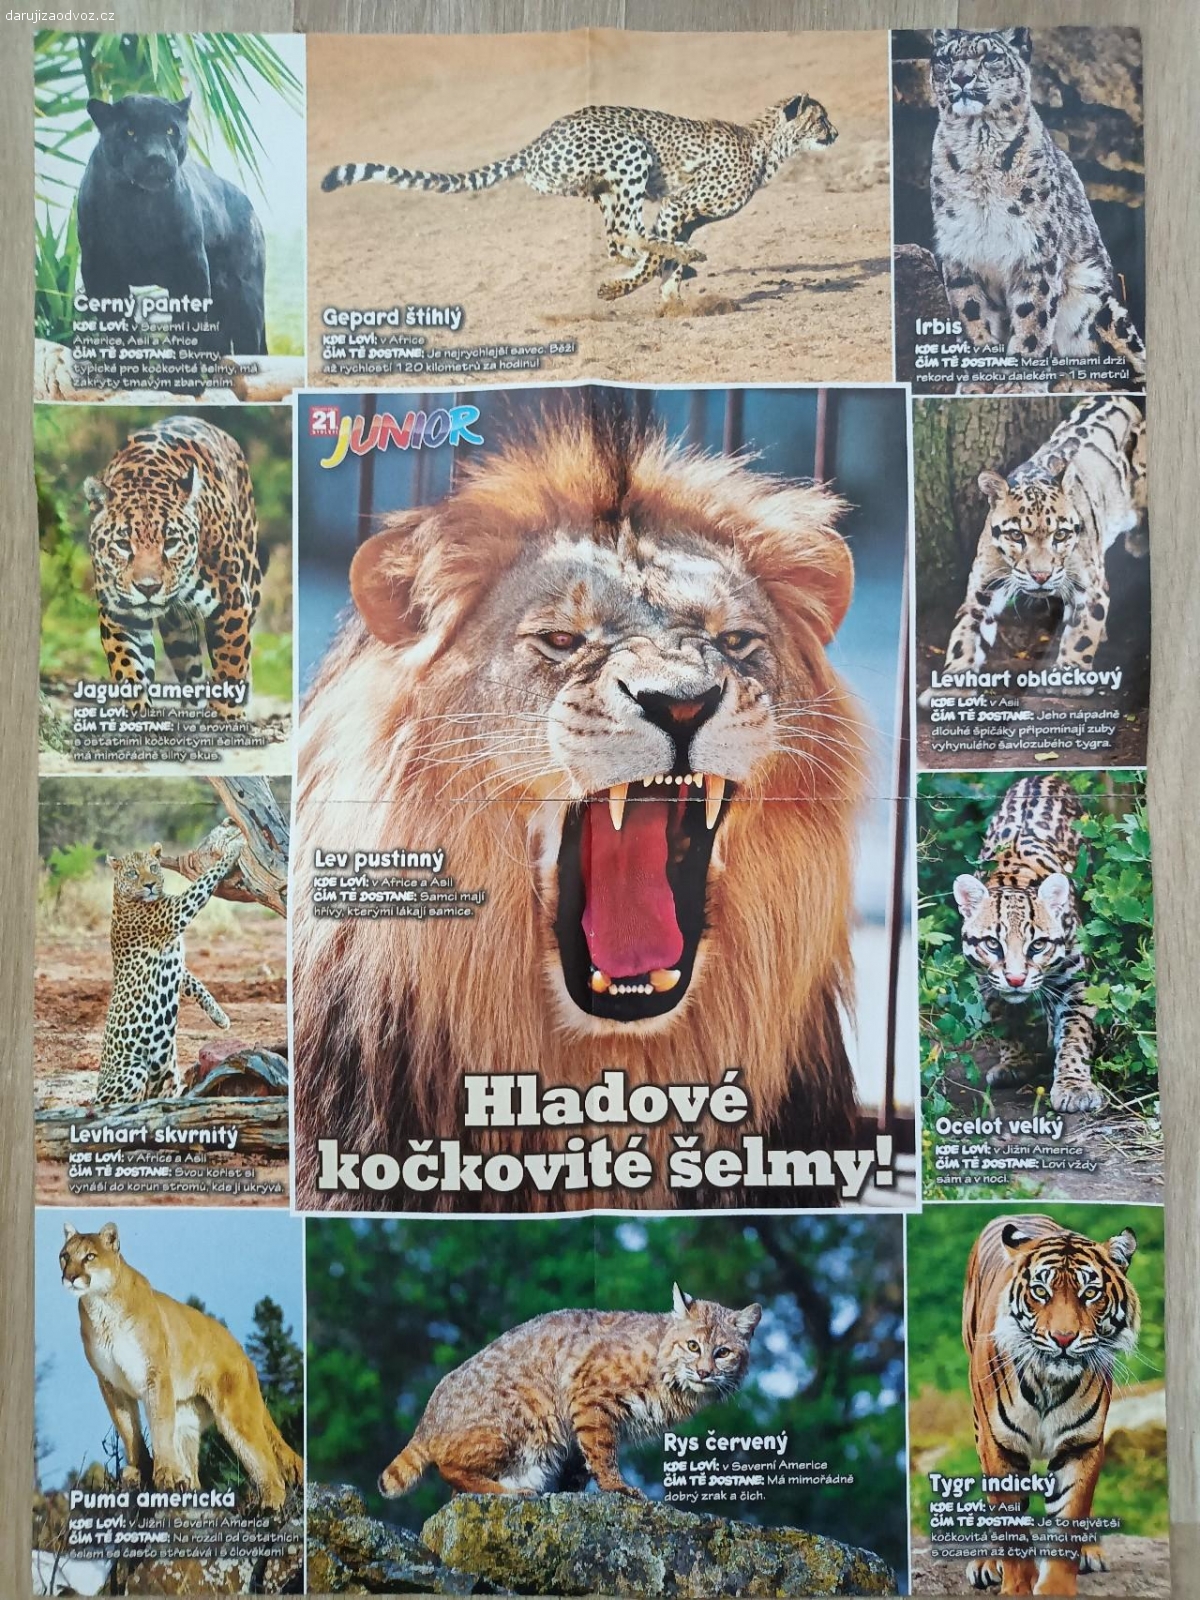 Plakát kočkovité šelmy. Plakát kočkovitých šelem o rozměrech 41,5 x 58 cm. Z časopisu 21. století Junior